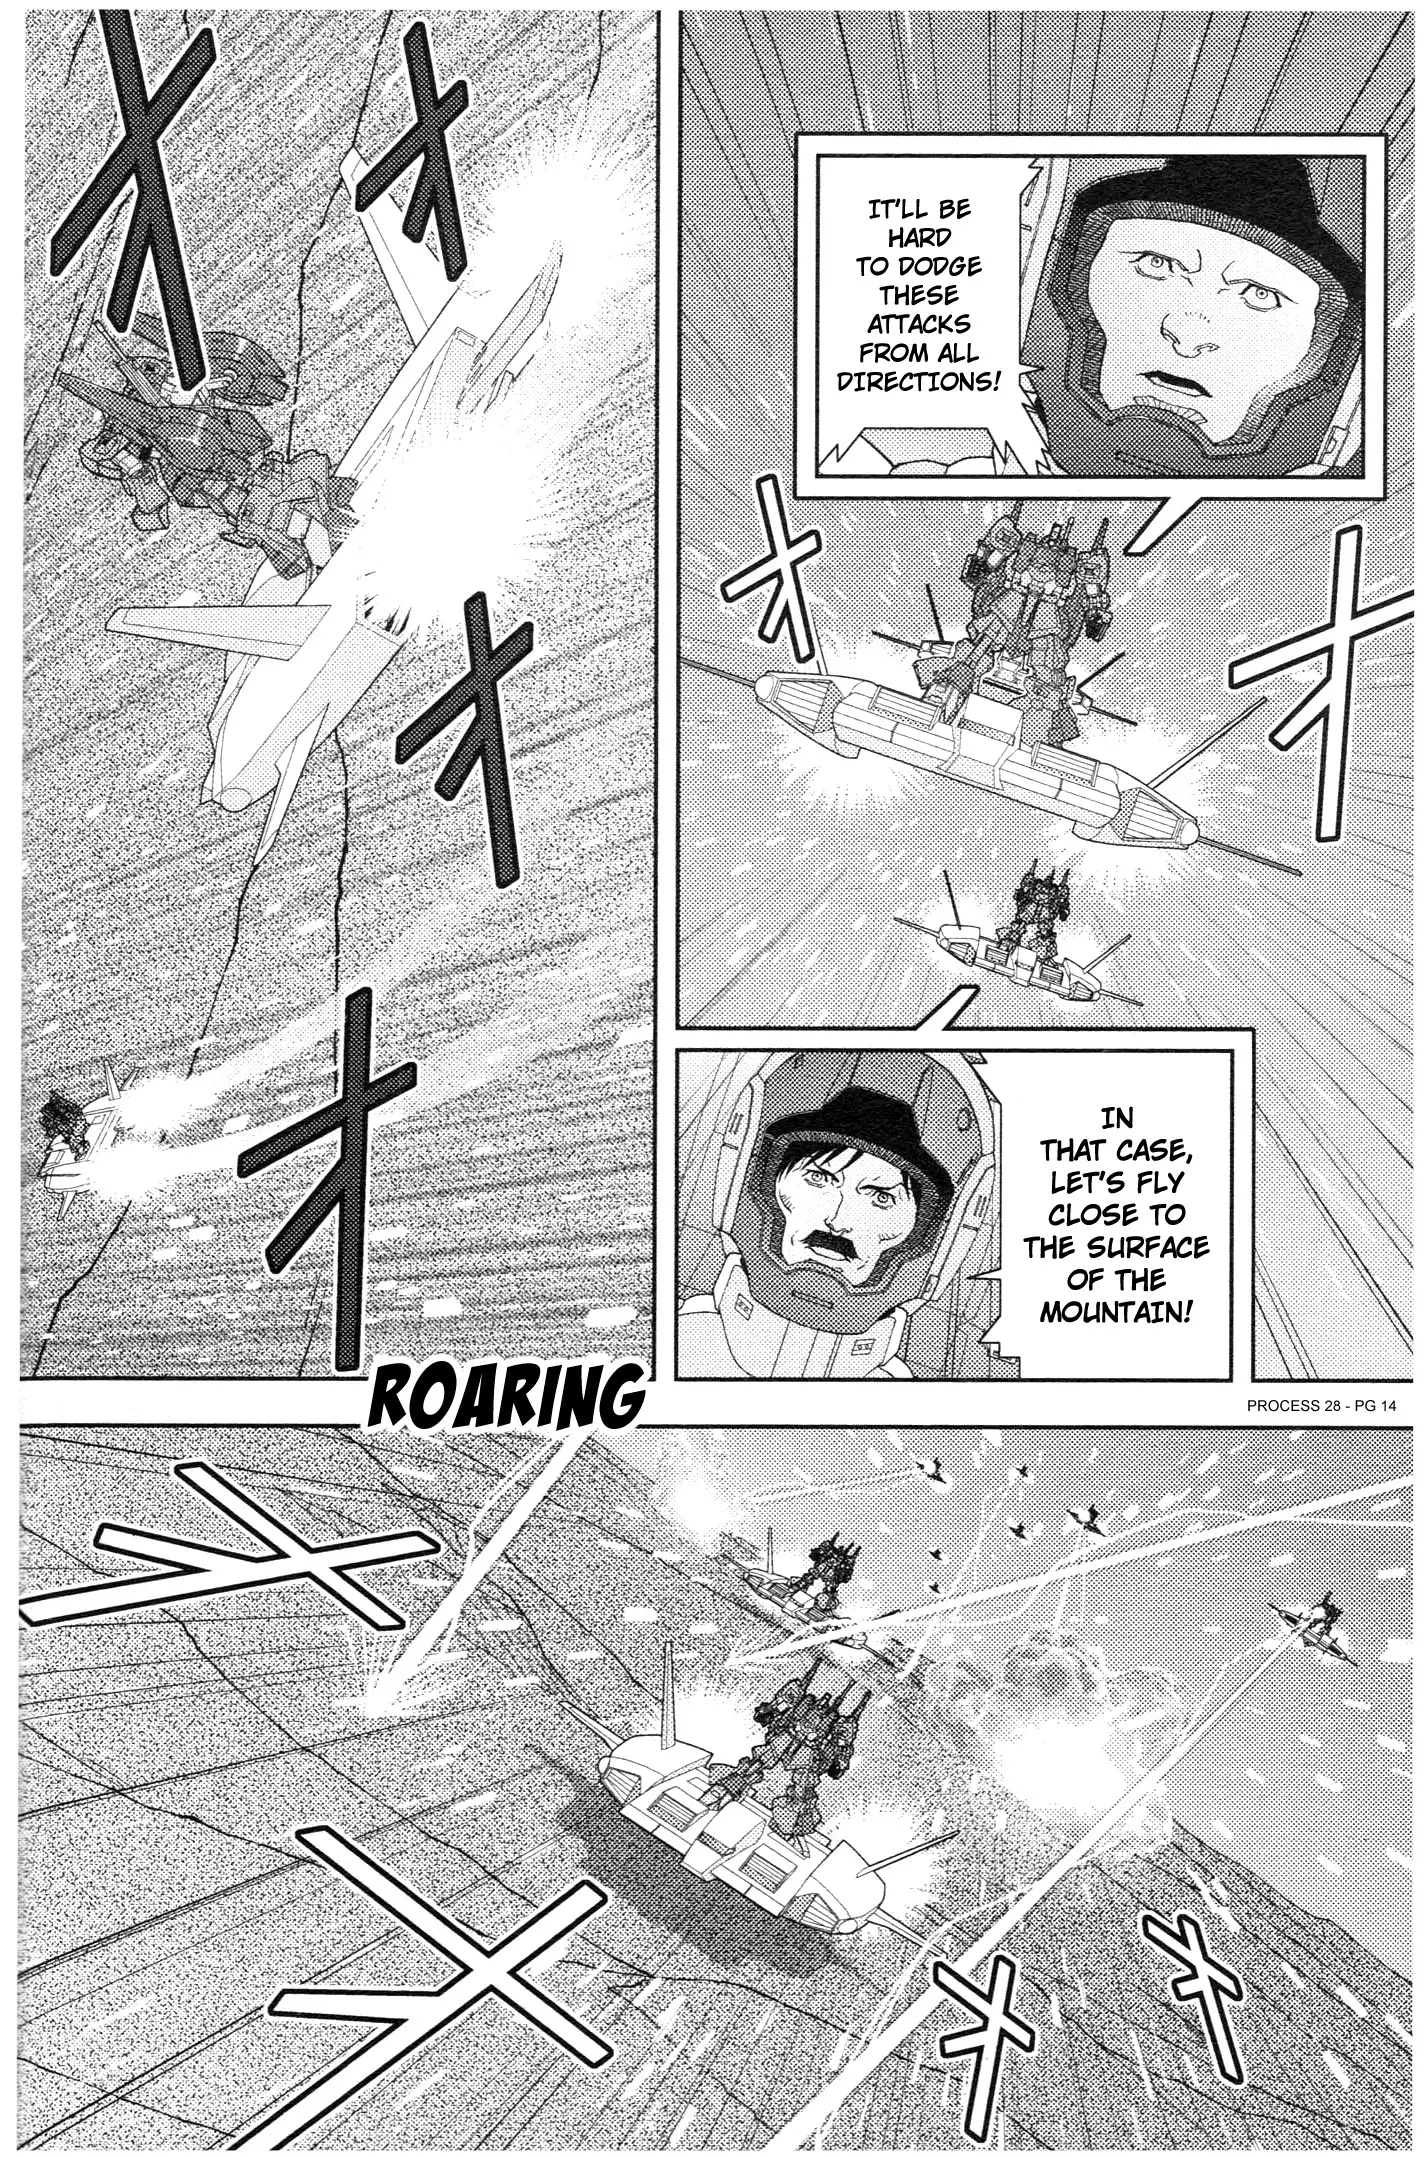 Mobile Suit Zeta Gundam - Define - 77 page 14-7535a4c8